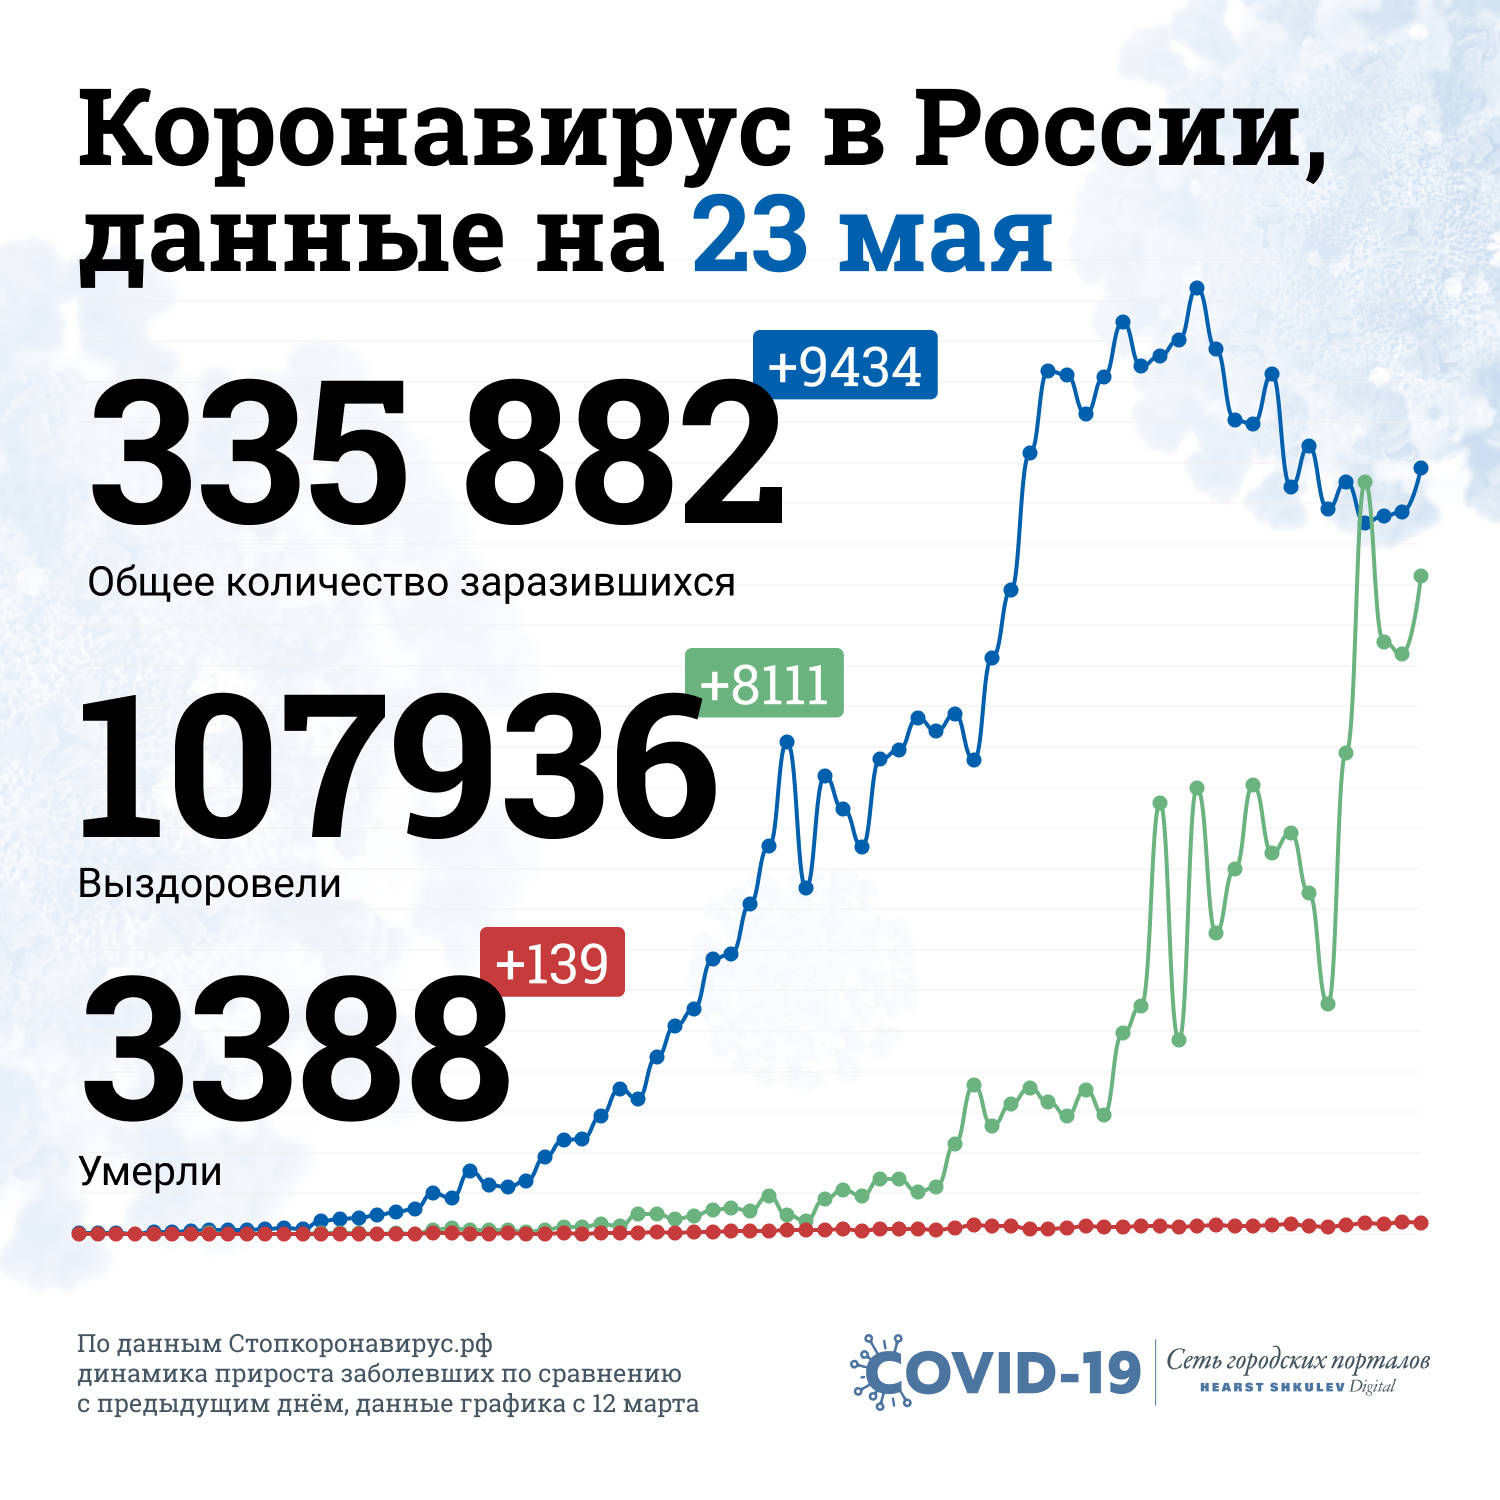 Так выглядит статистика пандемии в России